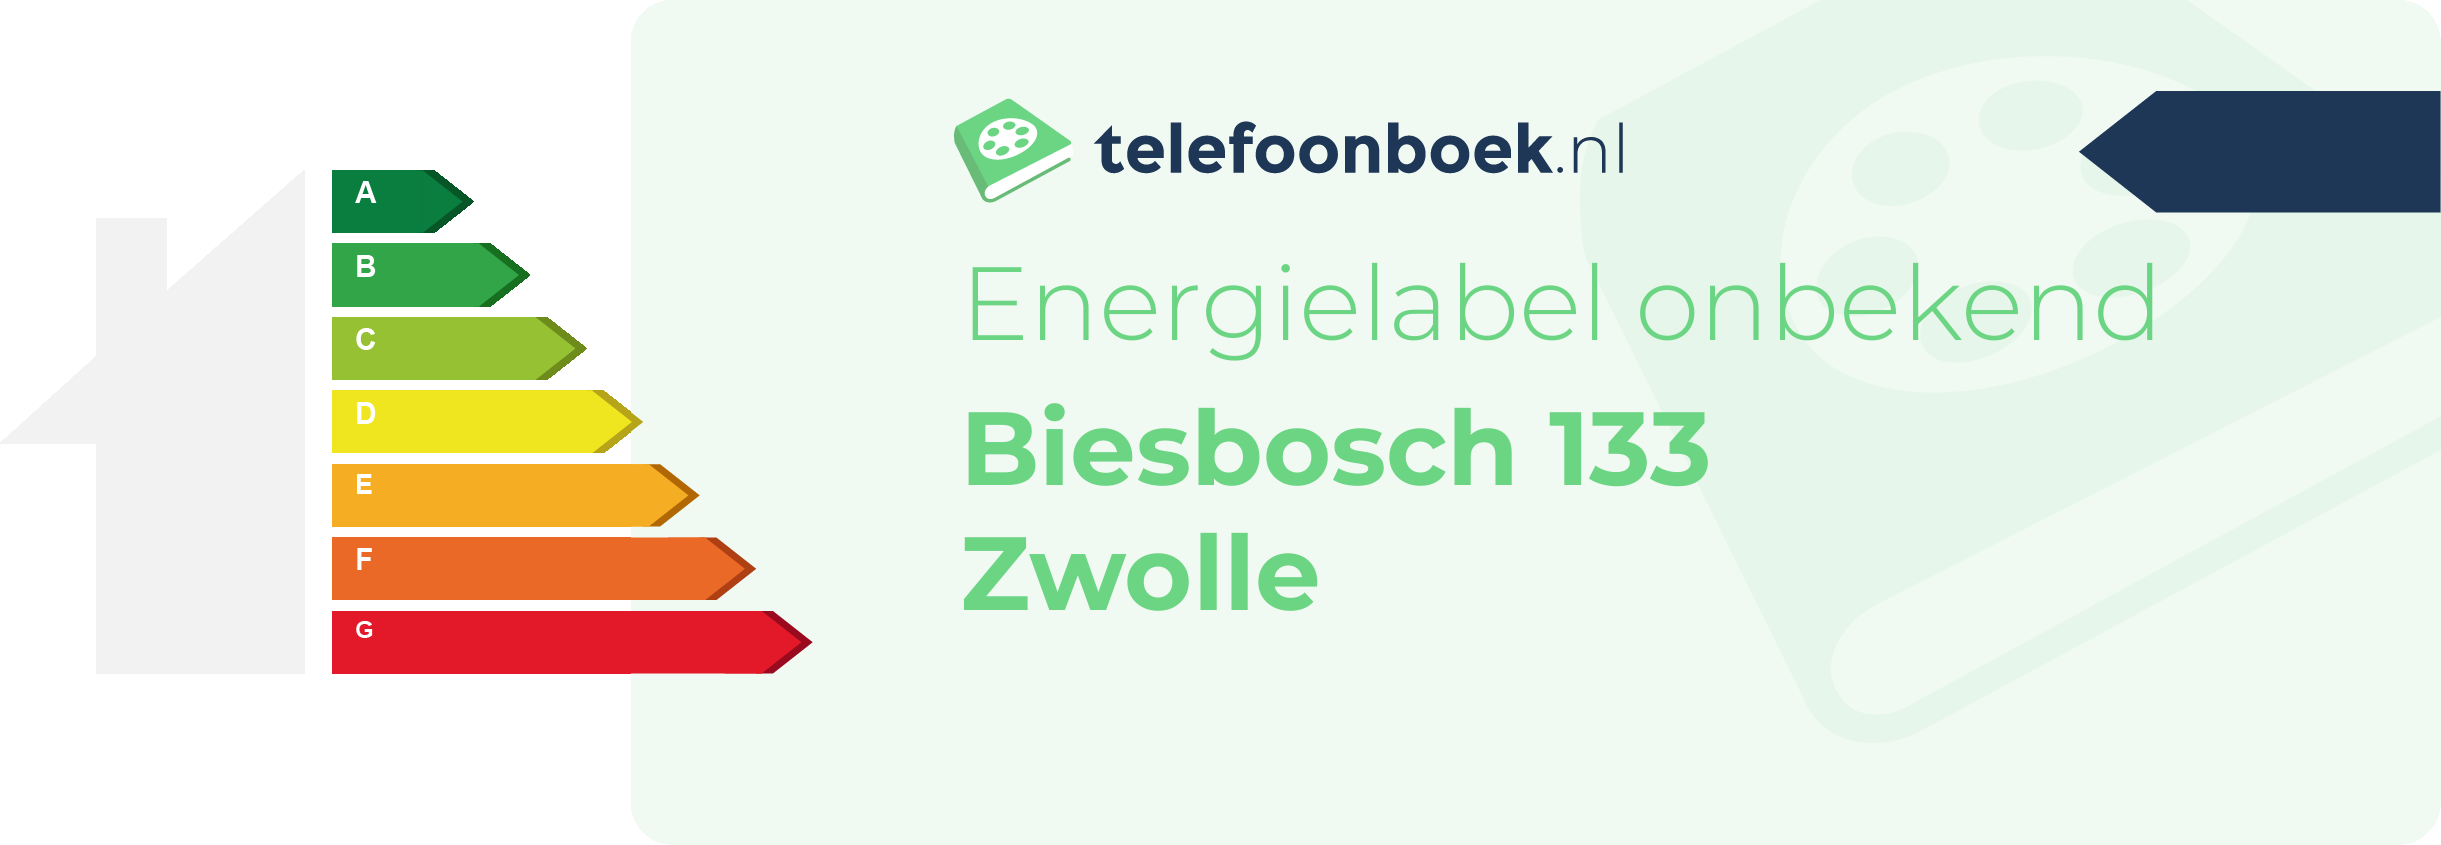 Energielabel Biesbosch 133 Zwolle